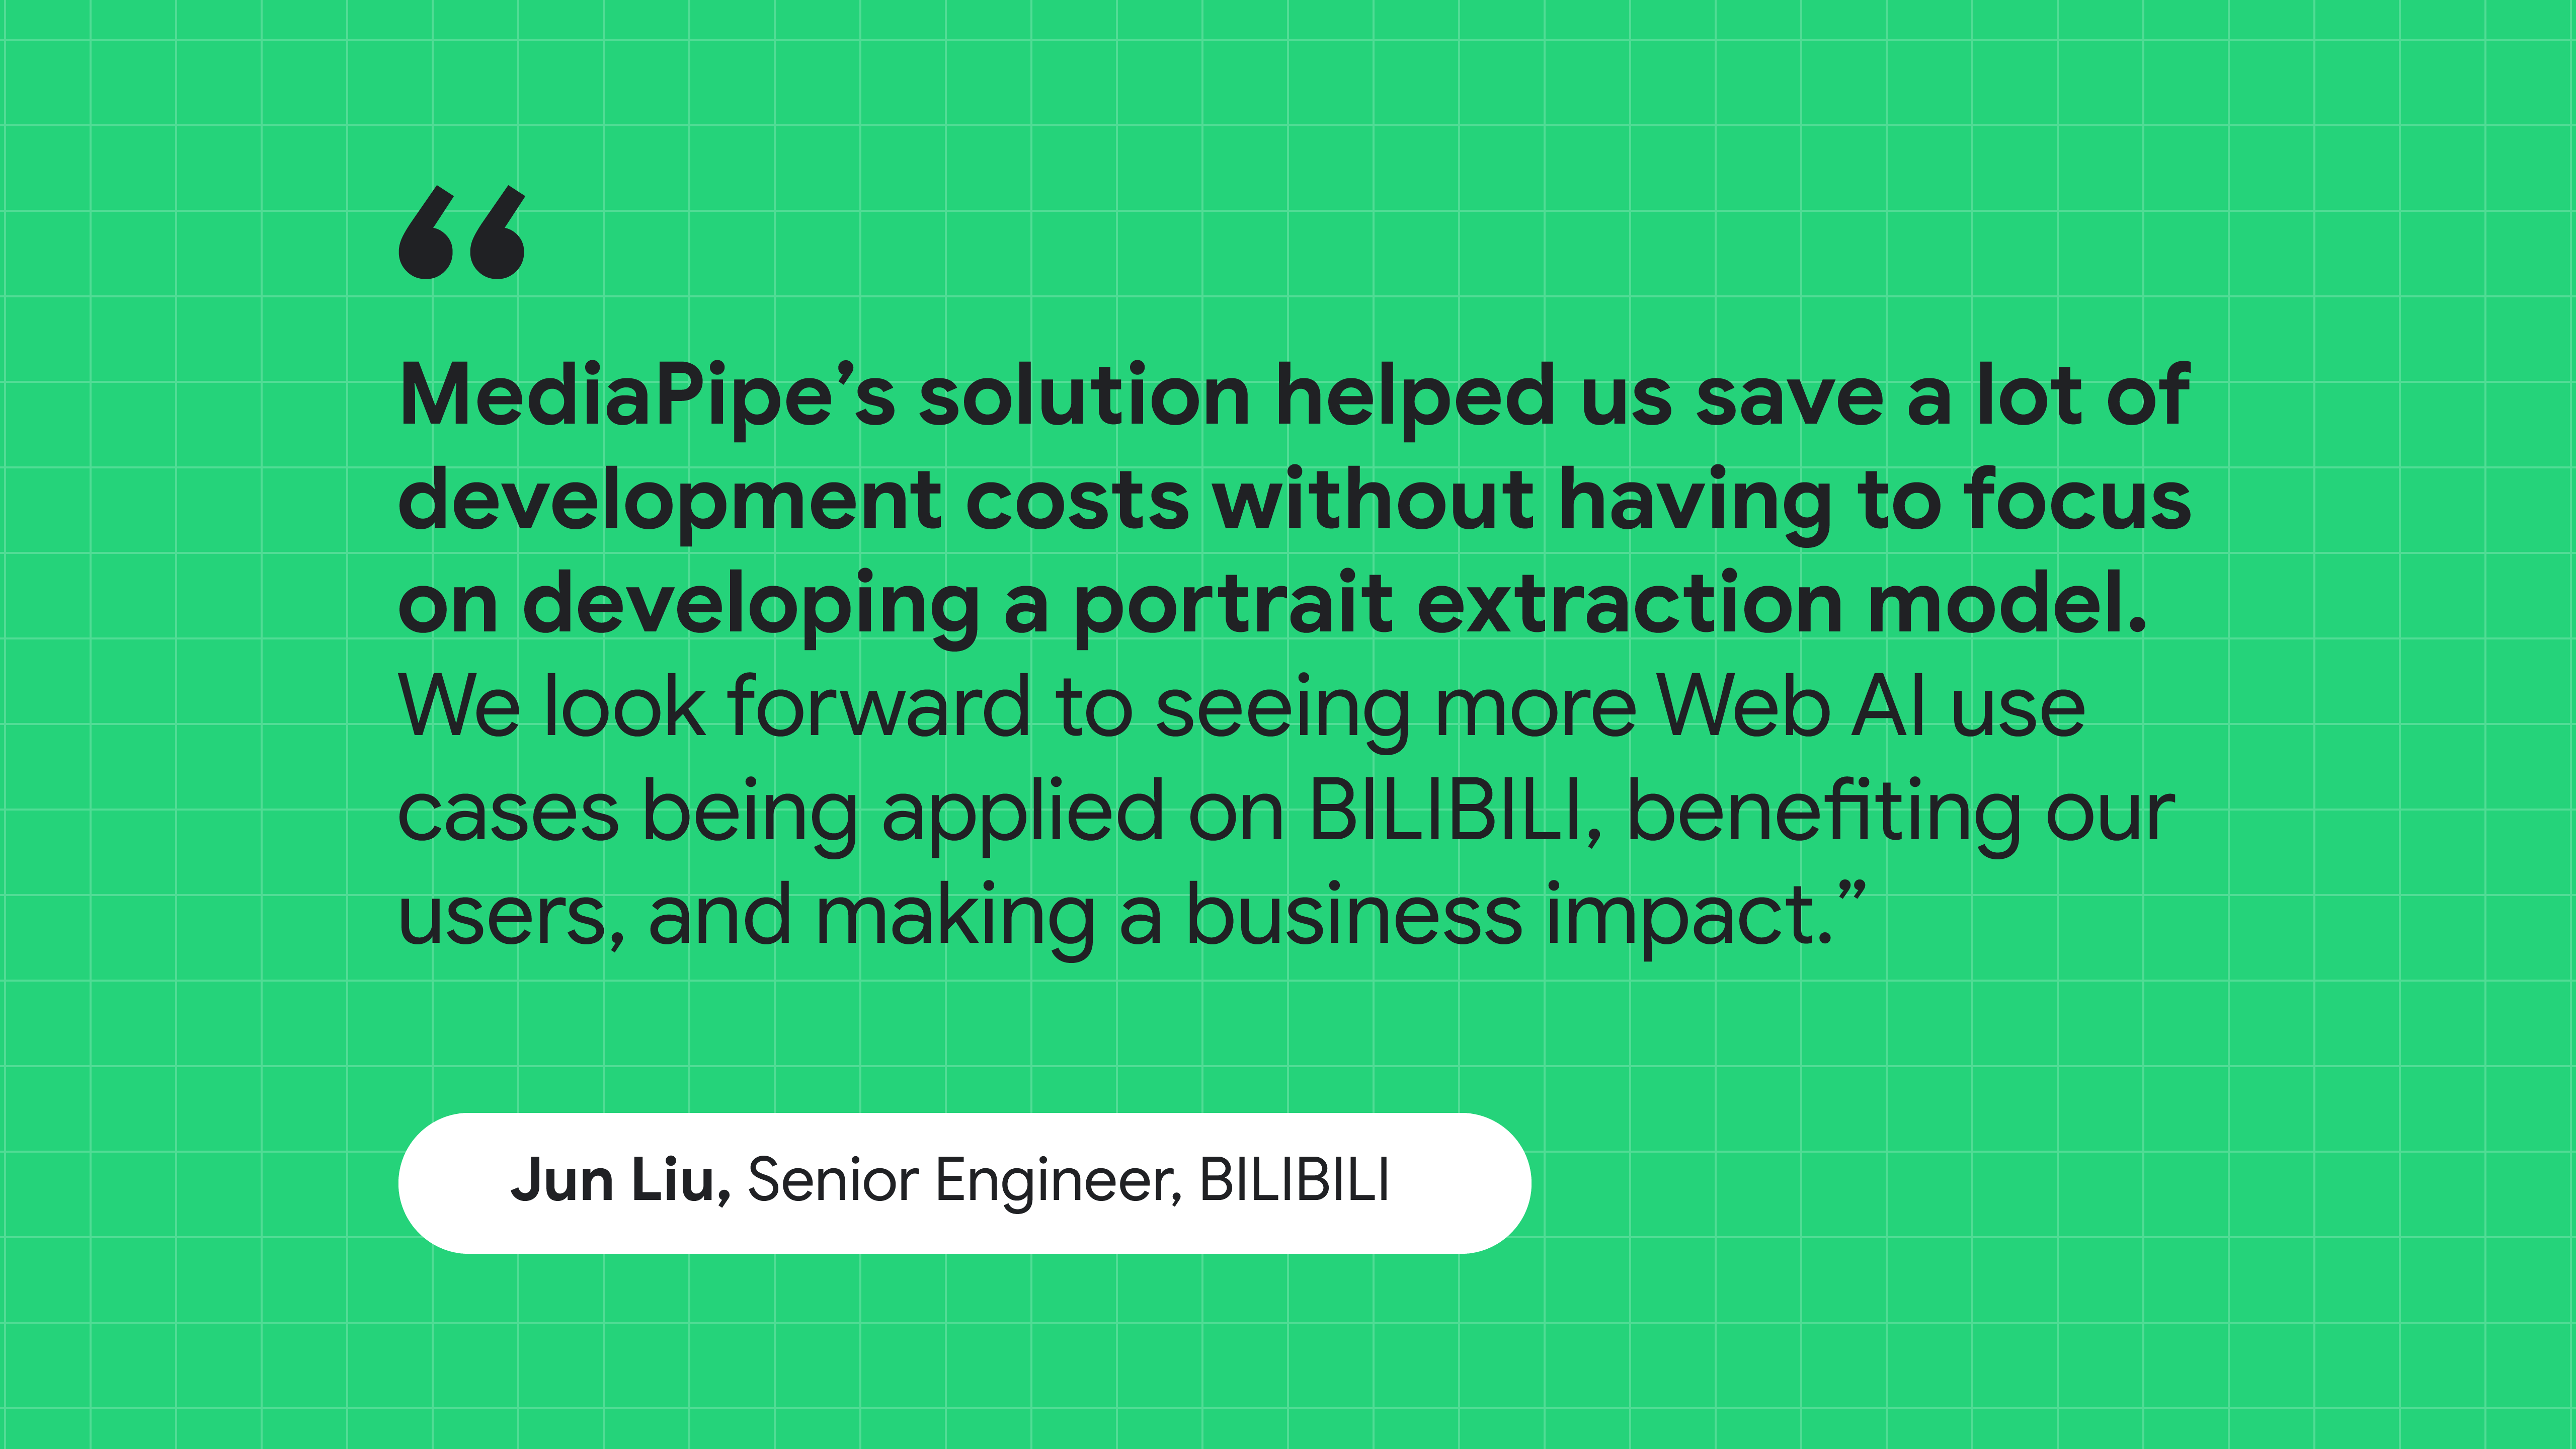 نقل قول از Jun Liu، مهندس ارشد در BILIBILI: راه حل MediaPipe به ما کمک کرد تا در هزینه های توسعه بدون تمرکز بر ایجاد یک مدل استخراج پرتره صرفه جویی کنیم.